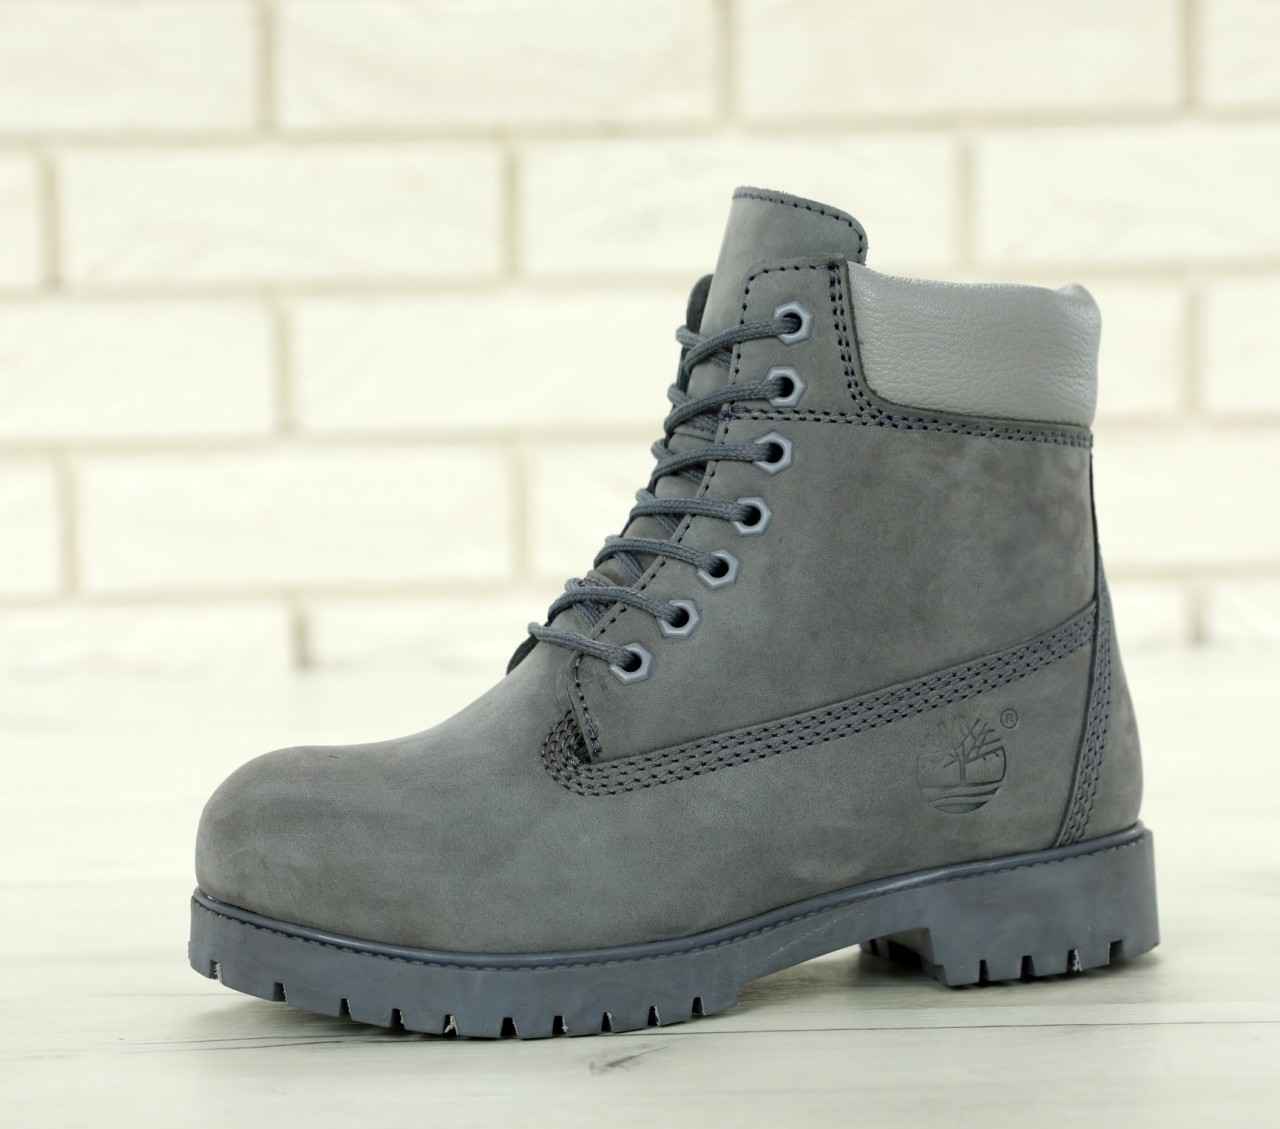 Зимние ботинки Timberland grey, мужские ботинки с натуральным мехом. ТОП Реплика ААА класса.